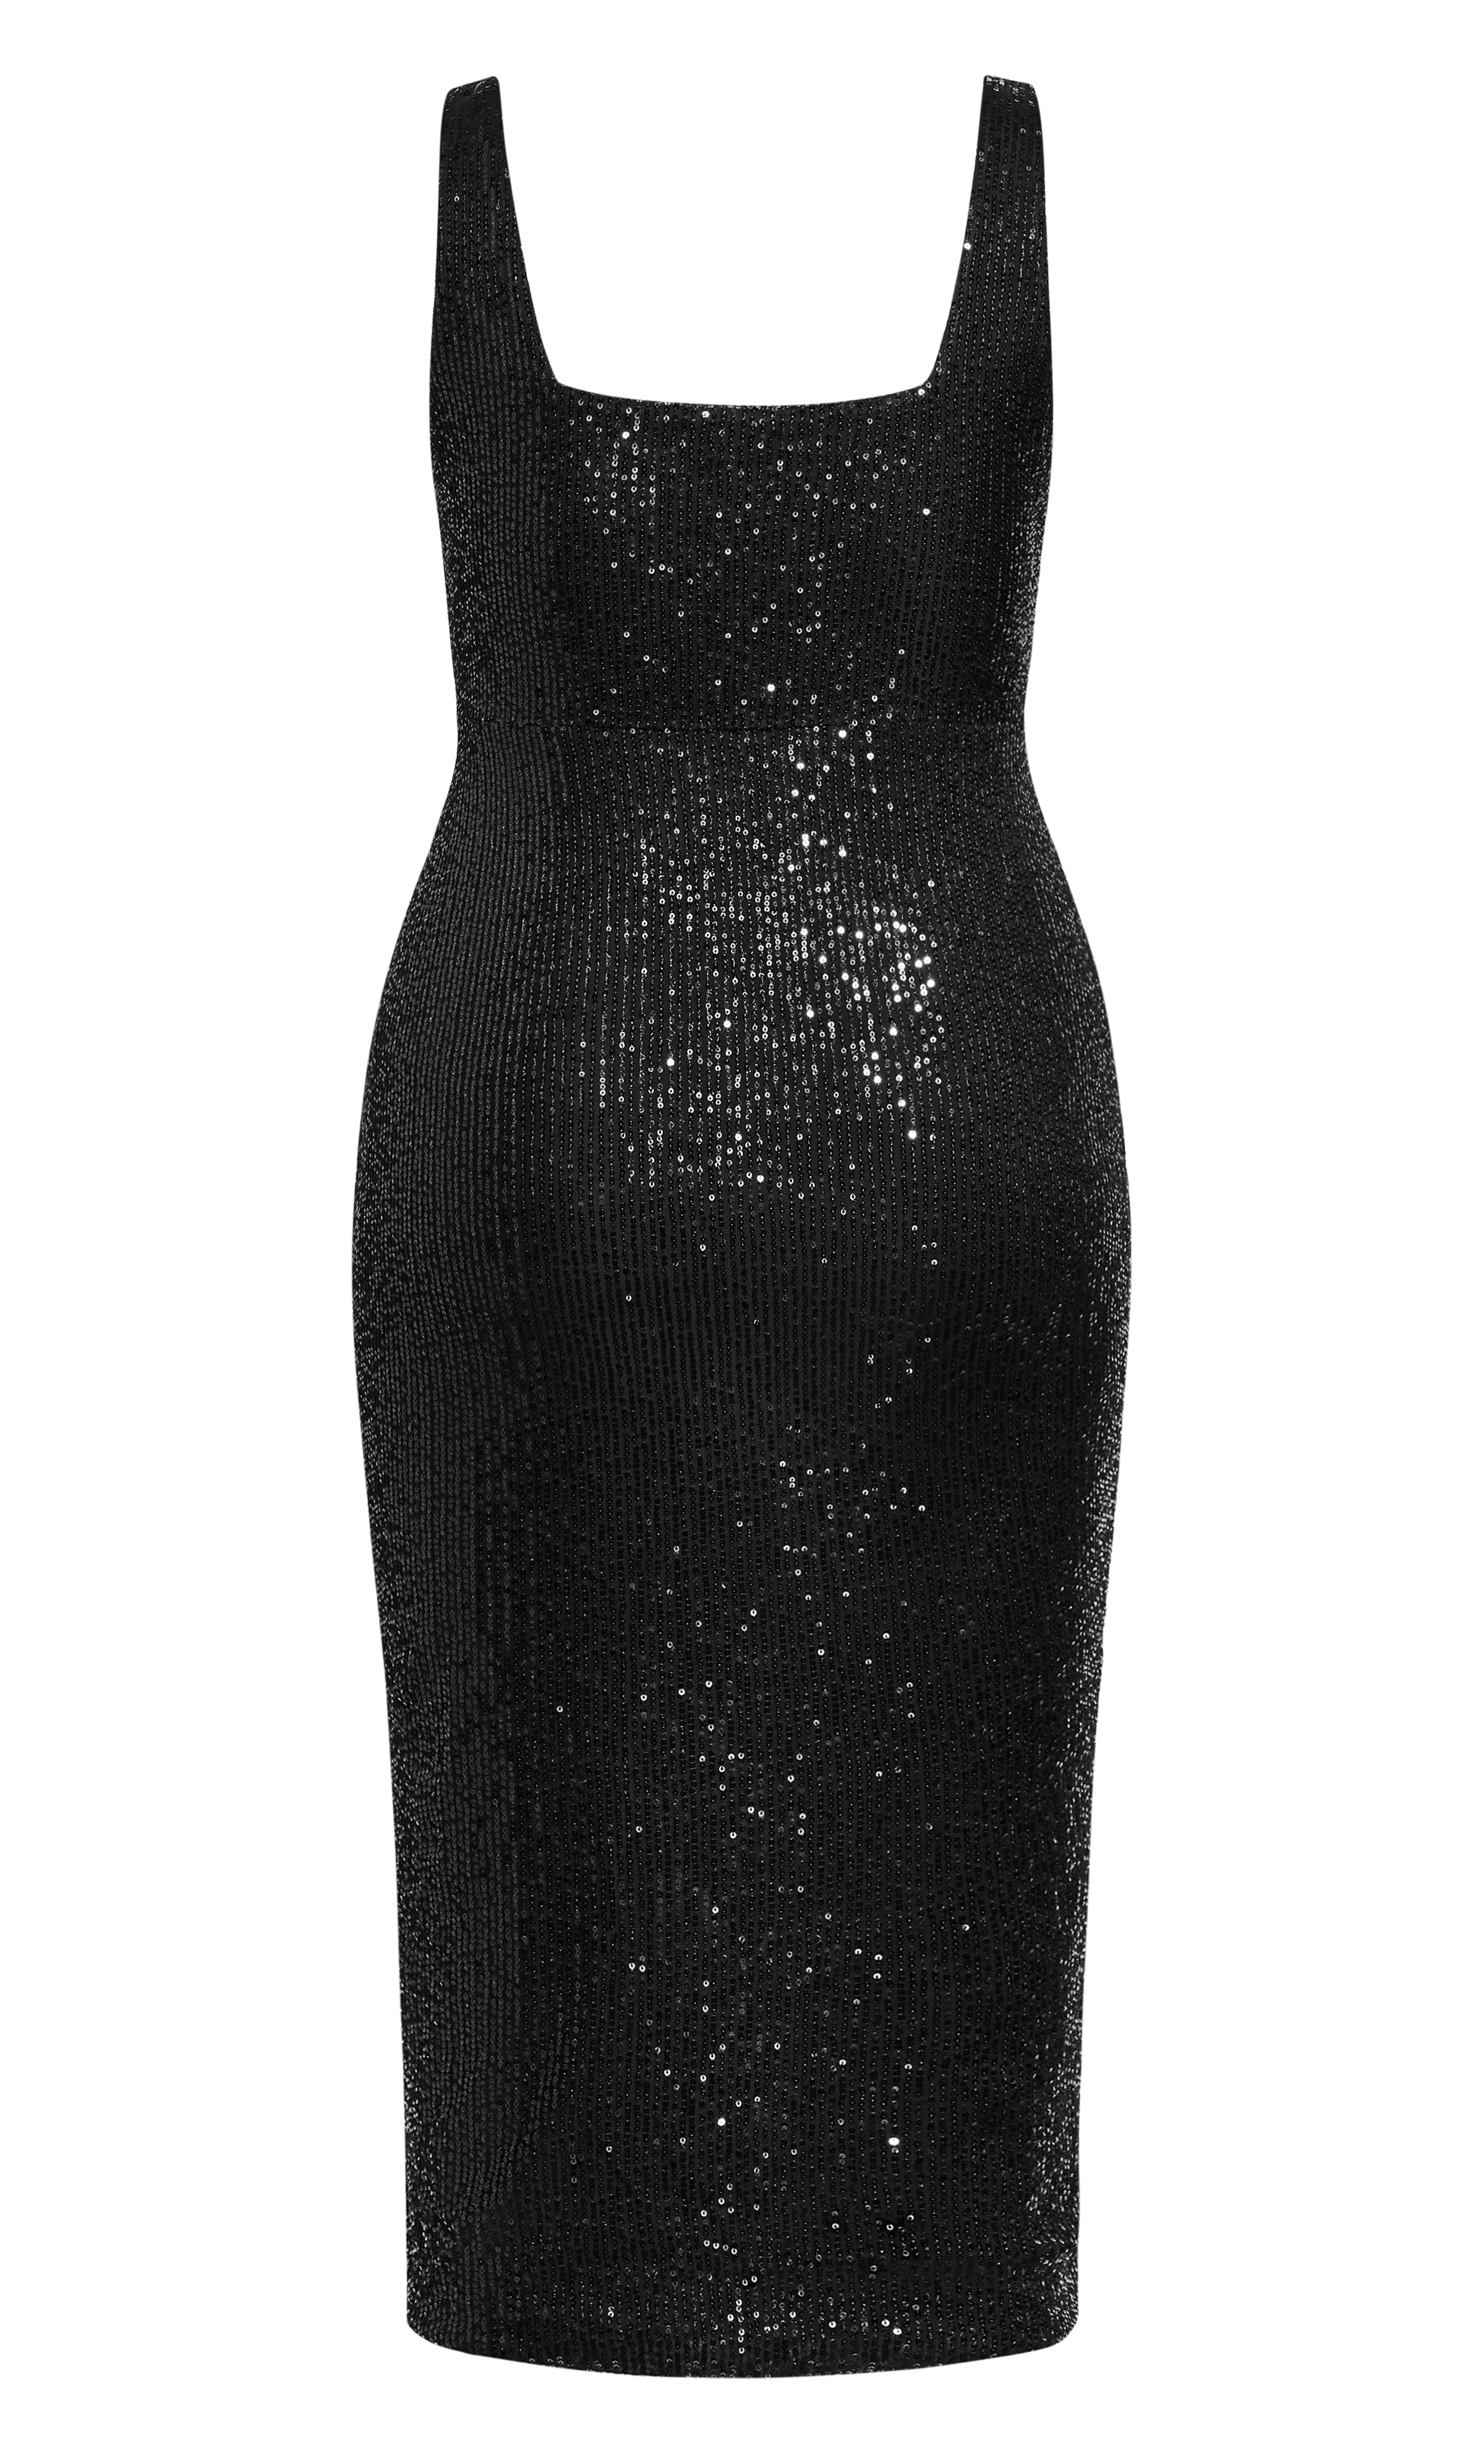 Plus Size Plus Size Sexy Sequin Dress - black